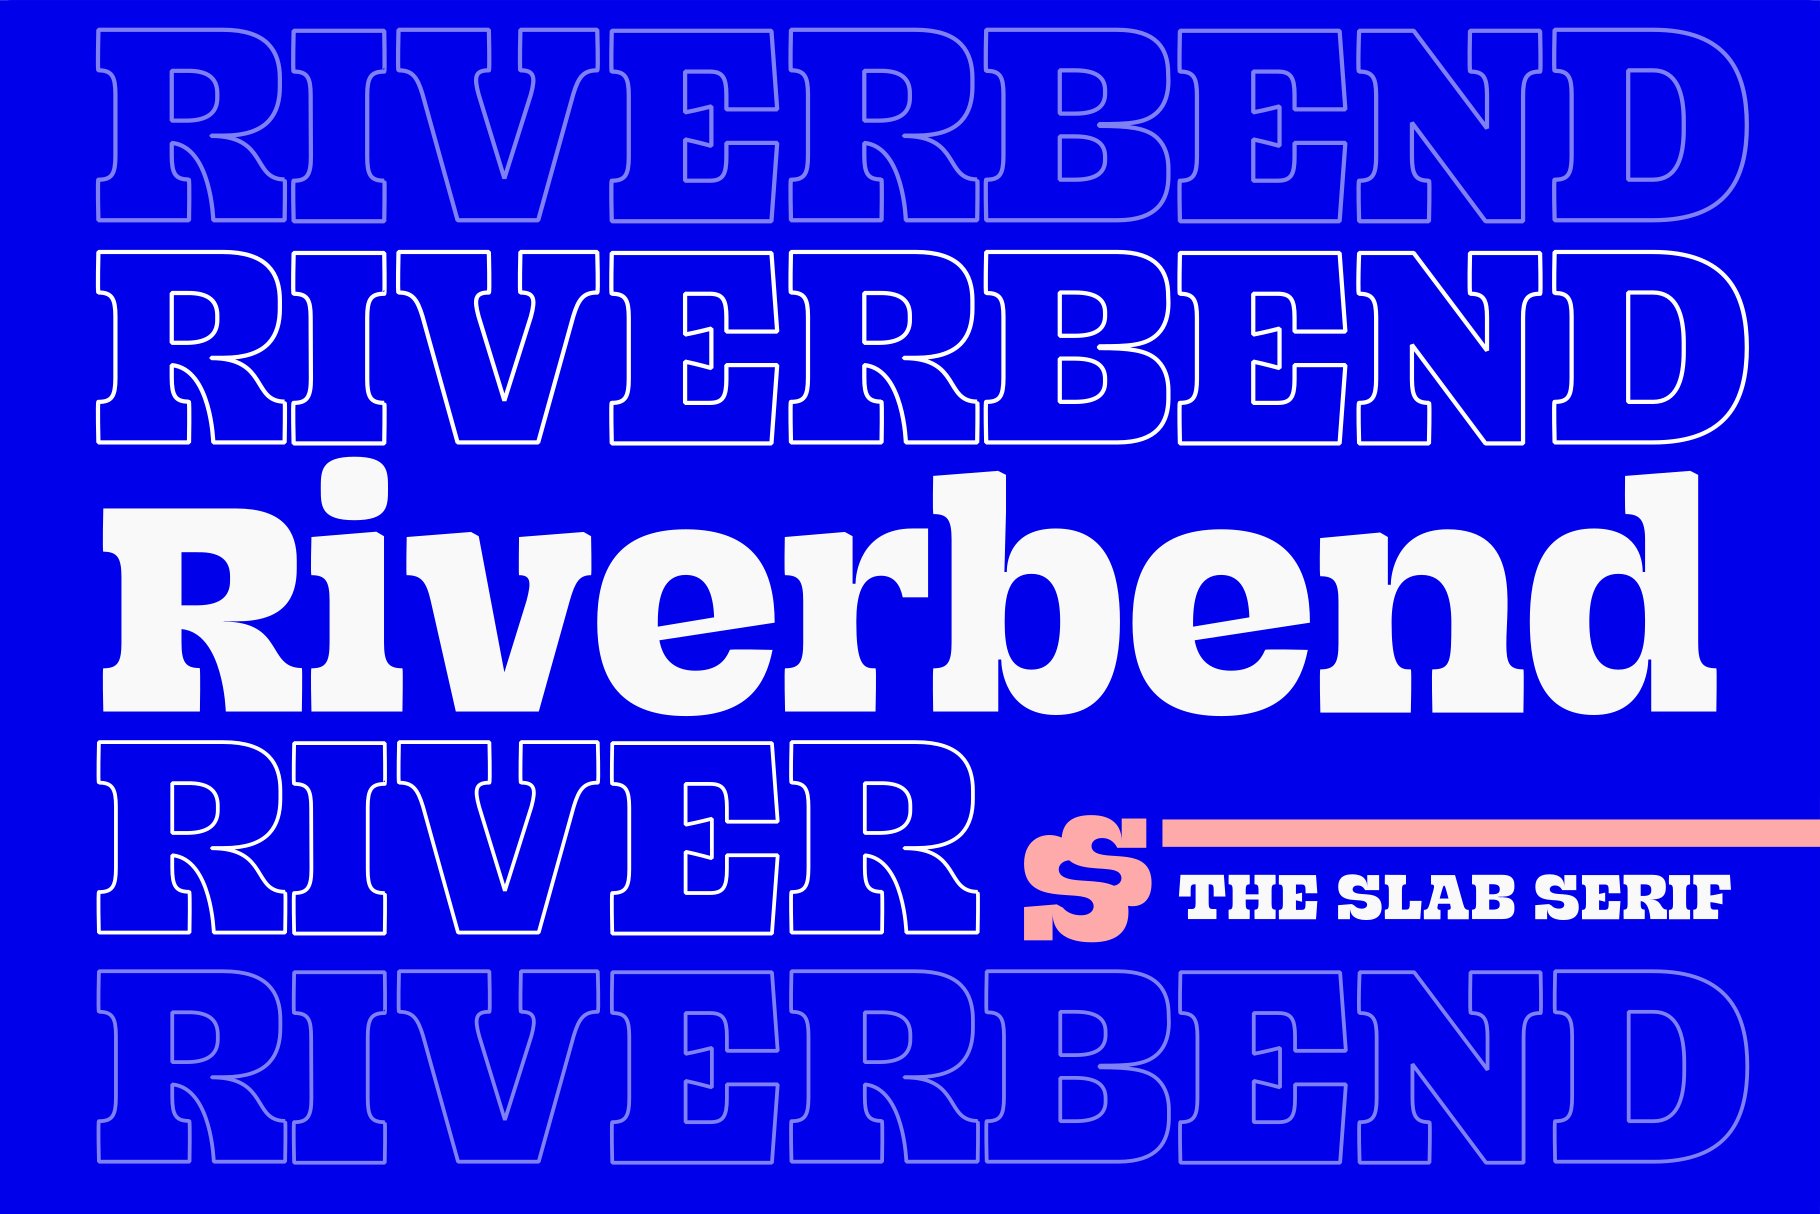 Riverbend 一款复古美学精神和活力俏皮曲线标题海报艺术展示粗衬线字体 设计素材 第1张